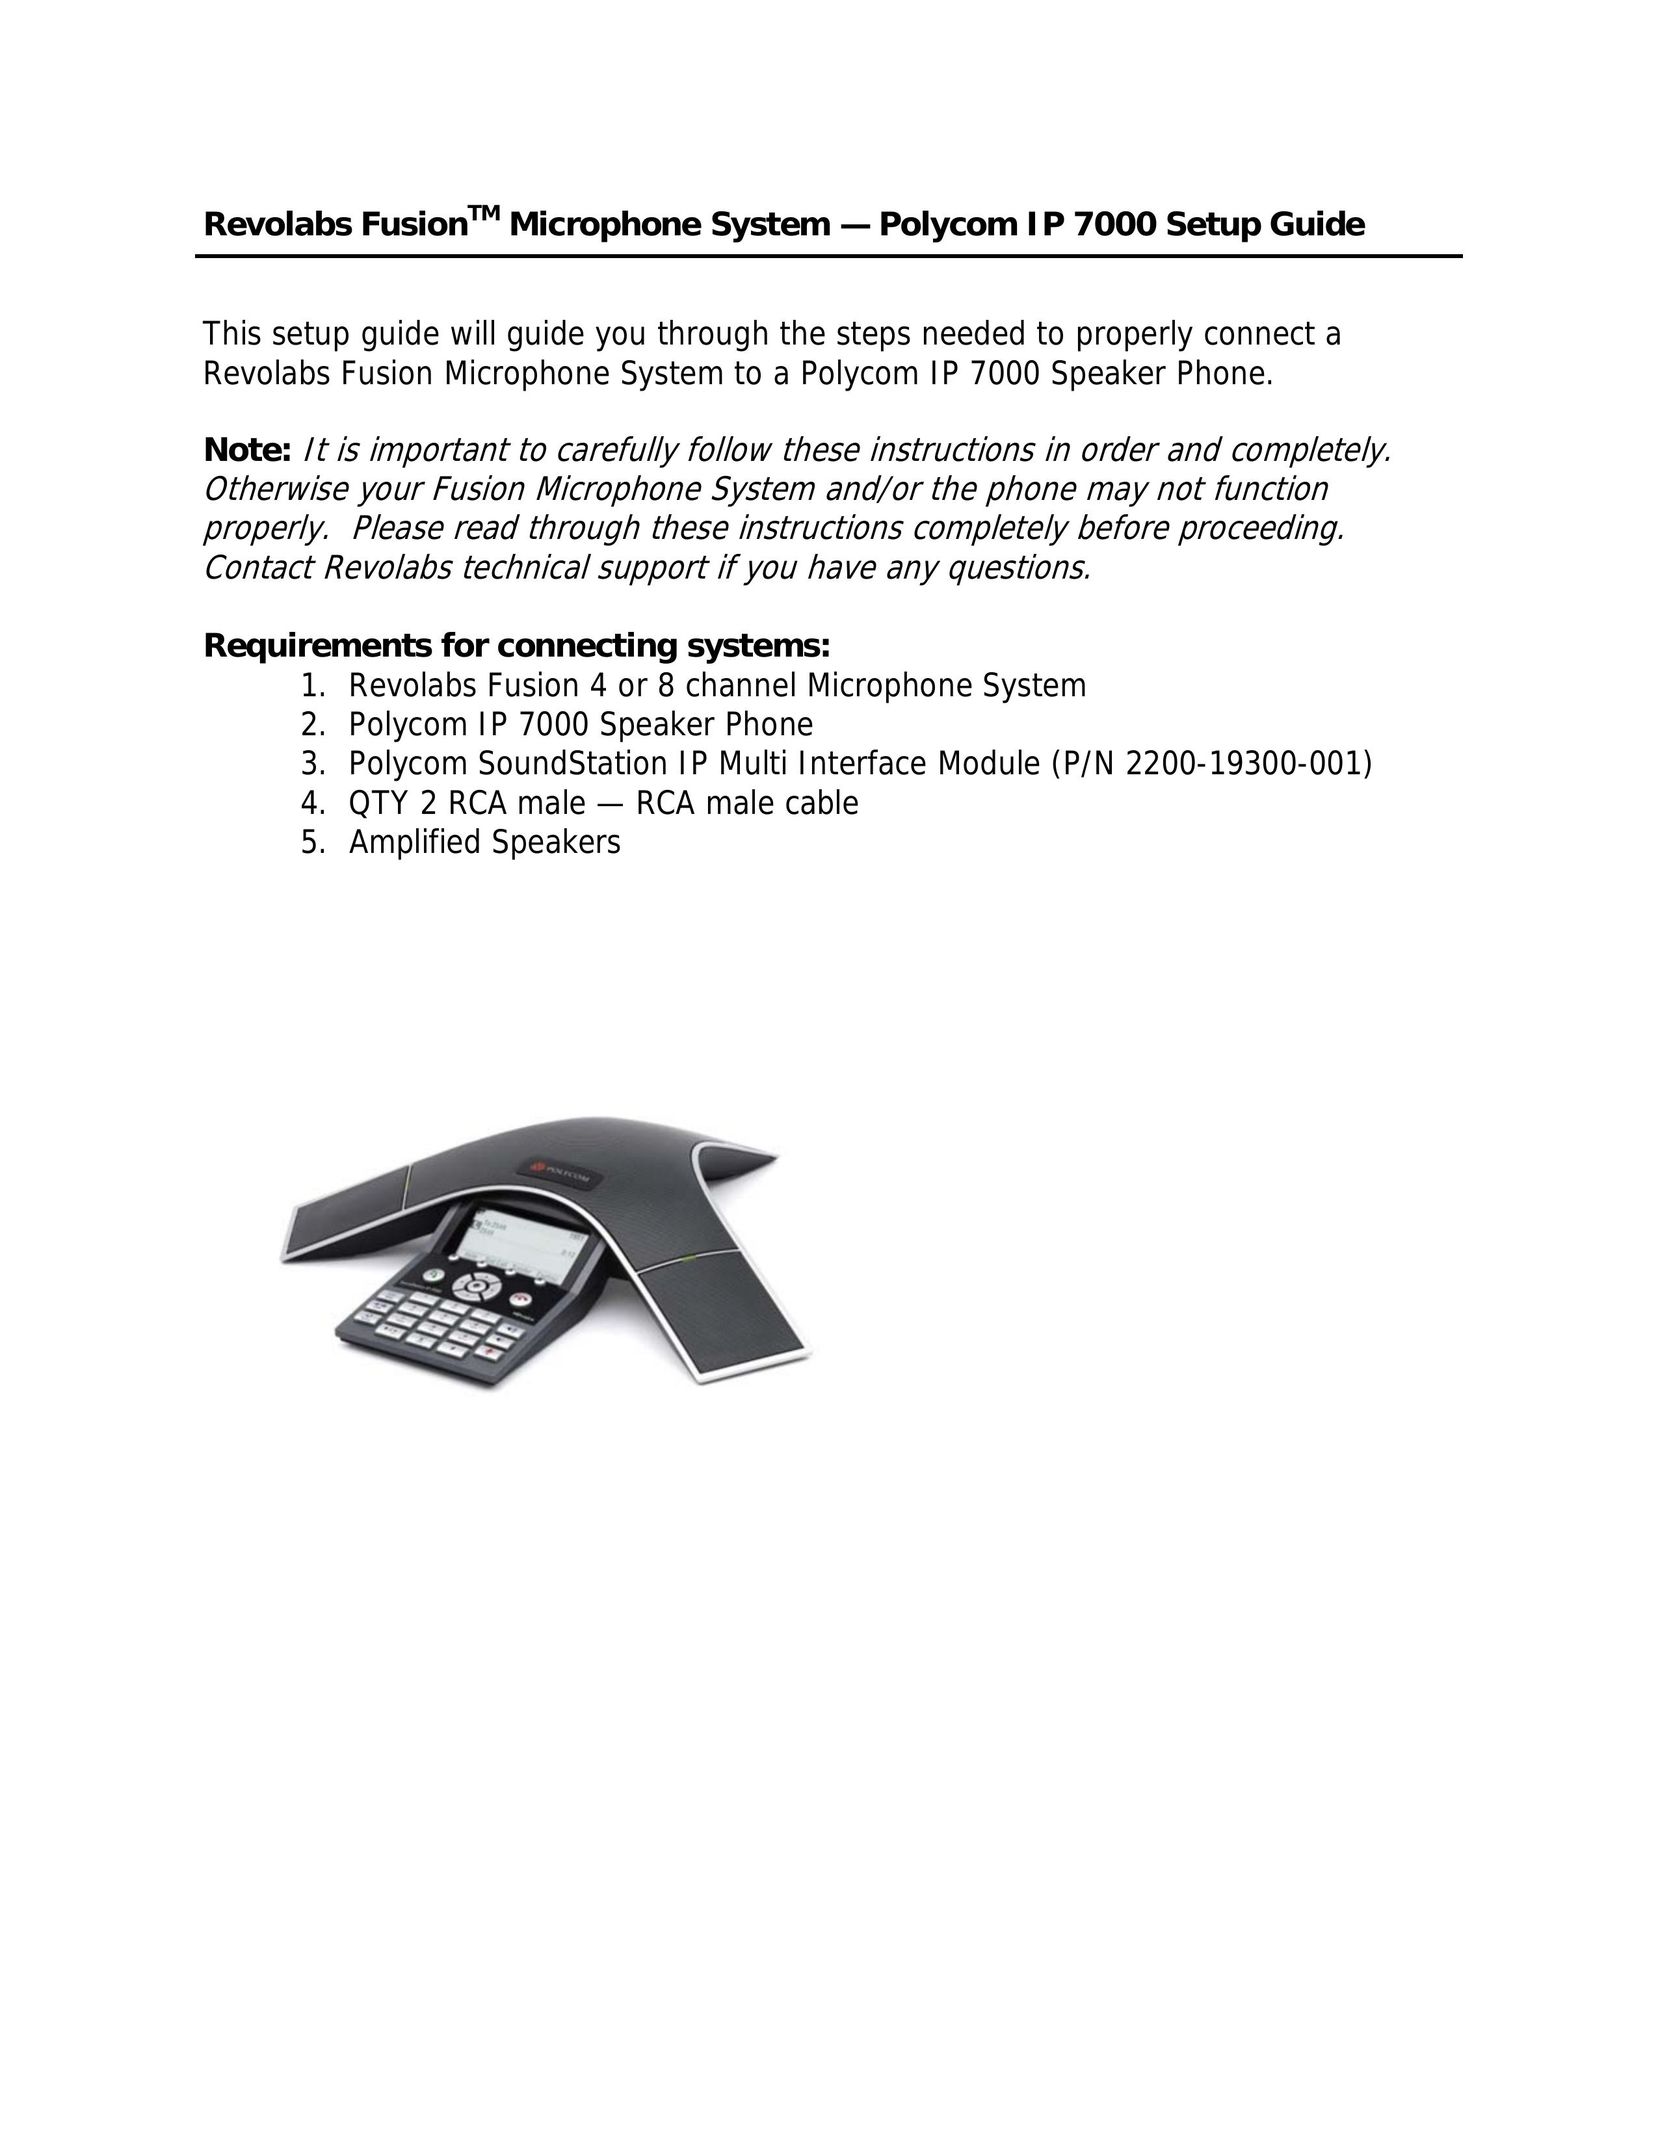 Revolabs IP 7000 Car Speaker User Manual